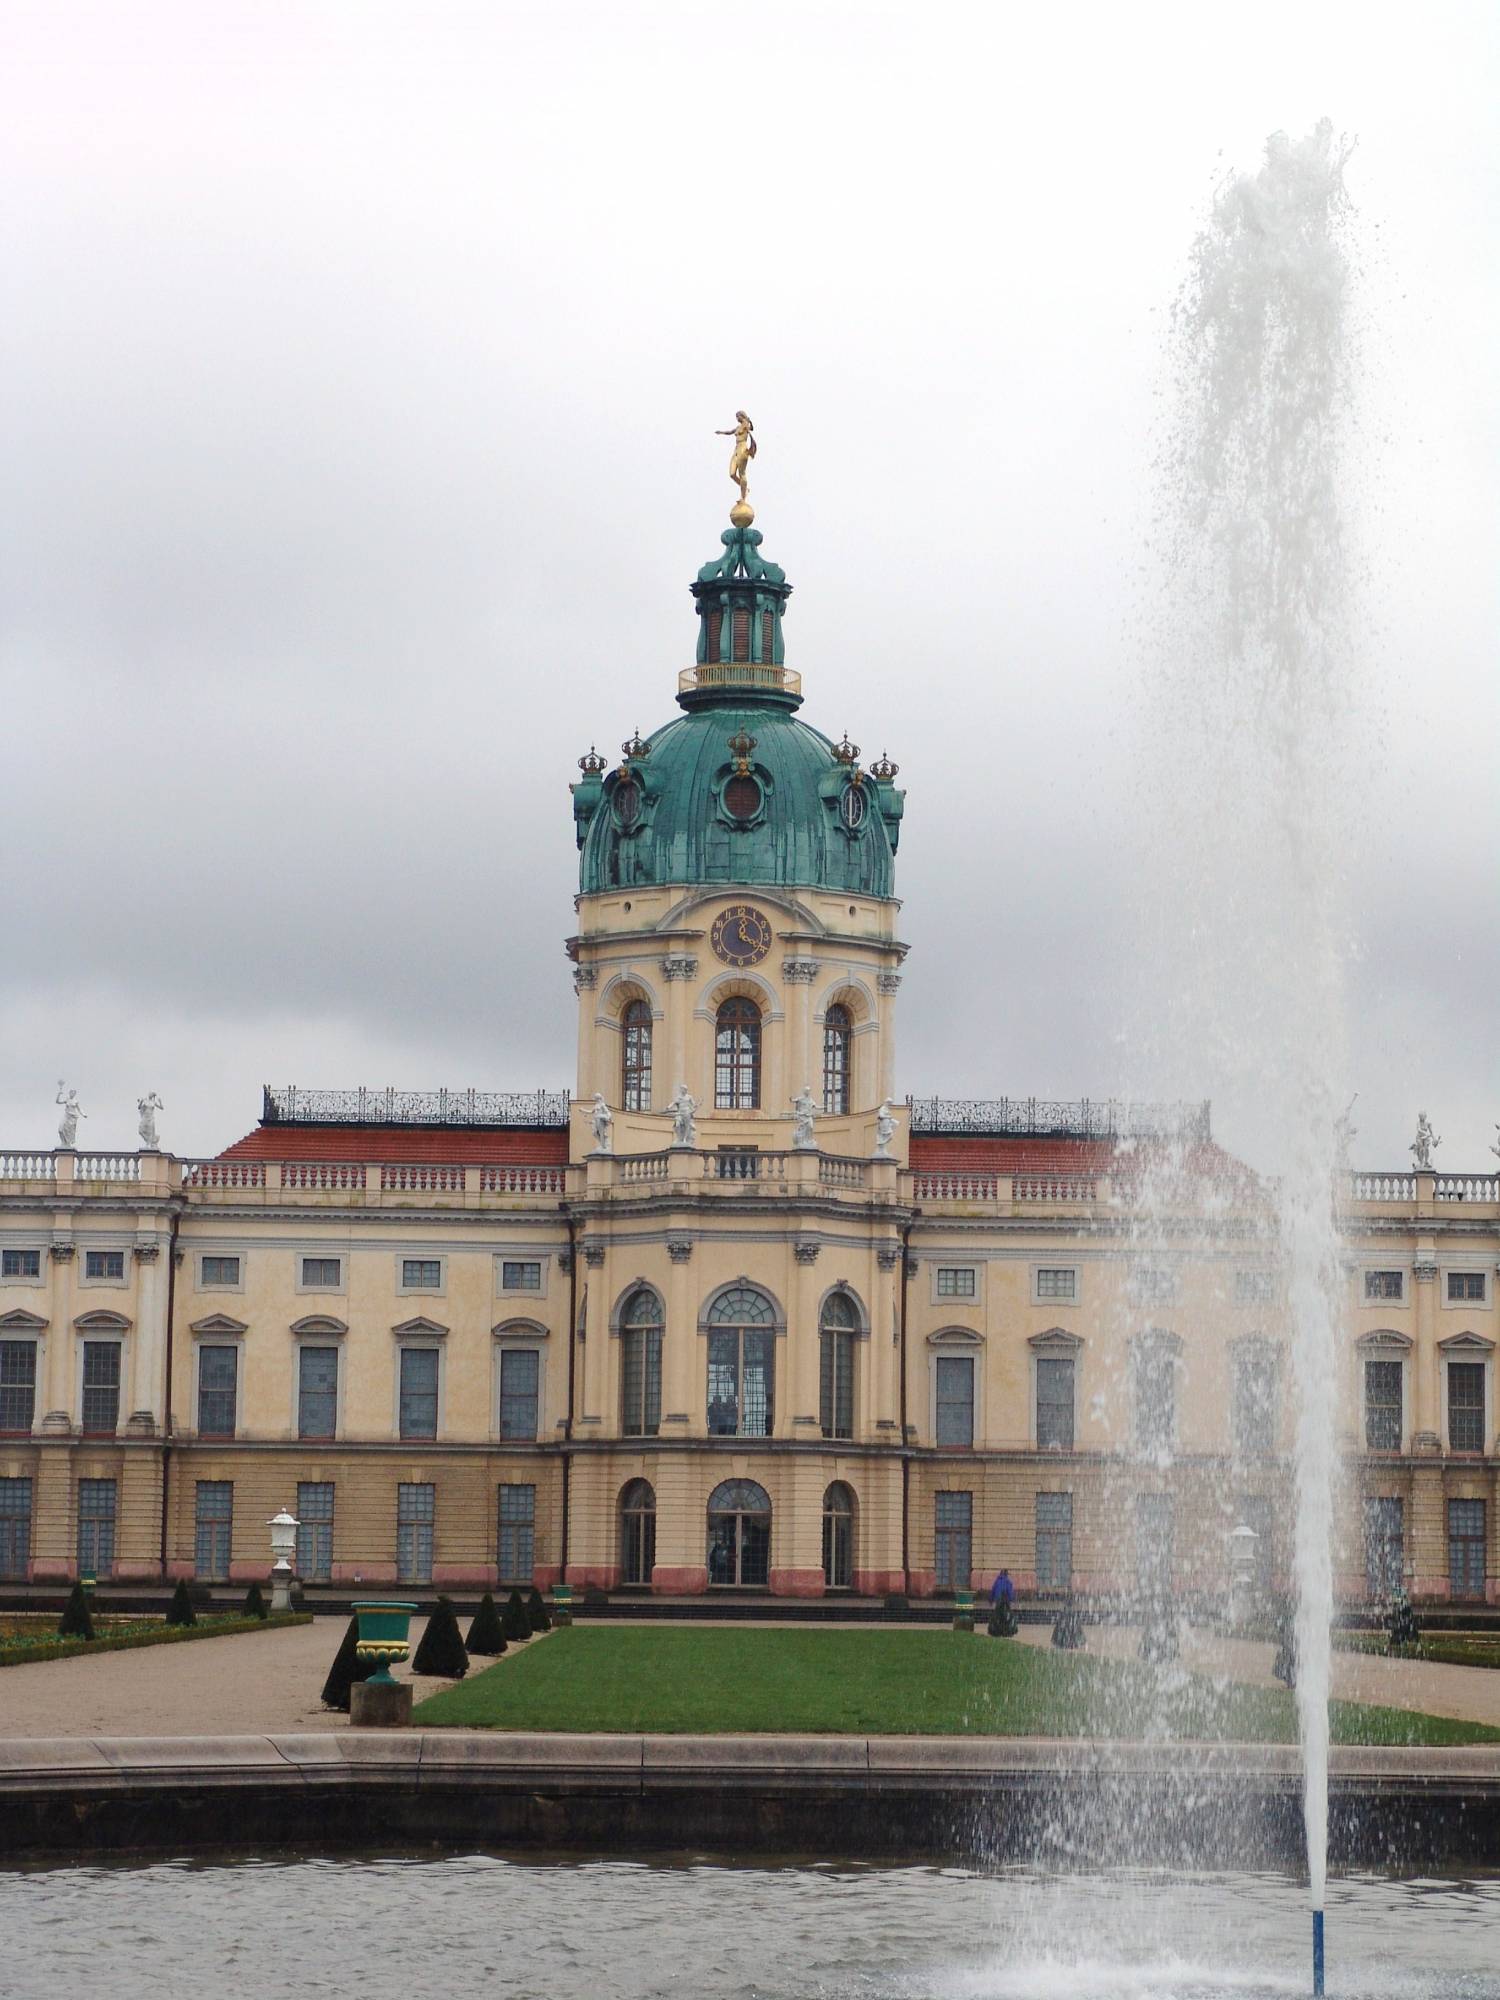 Berlin - Charlottenburg Palace